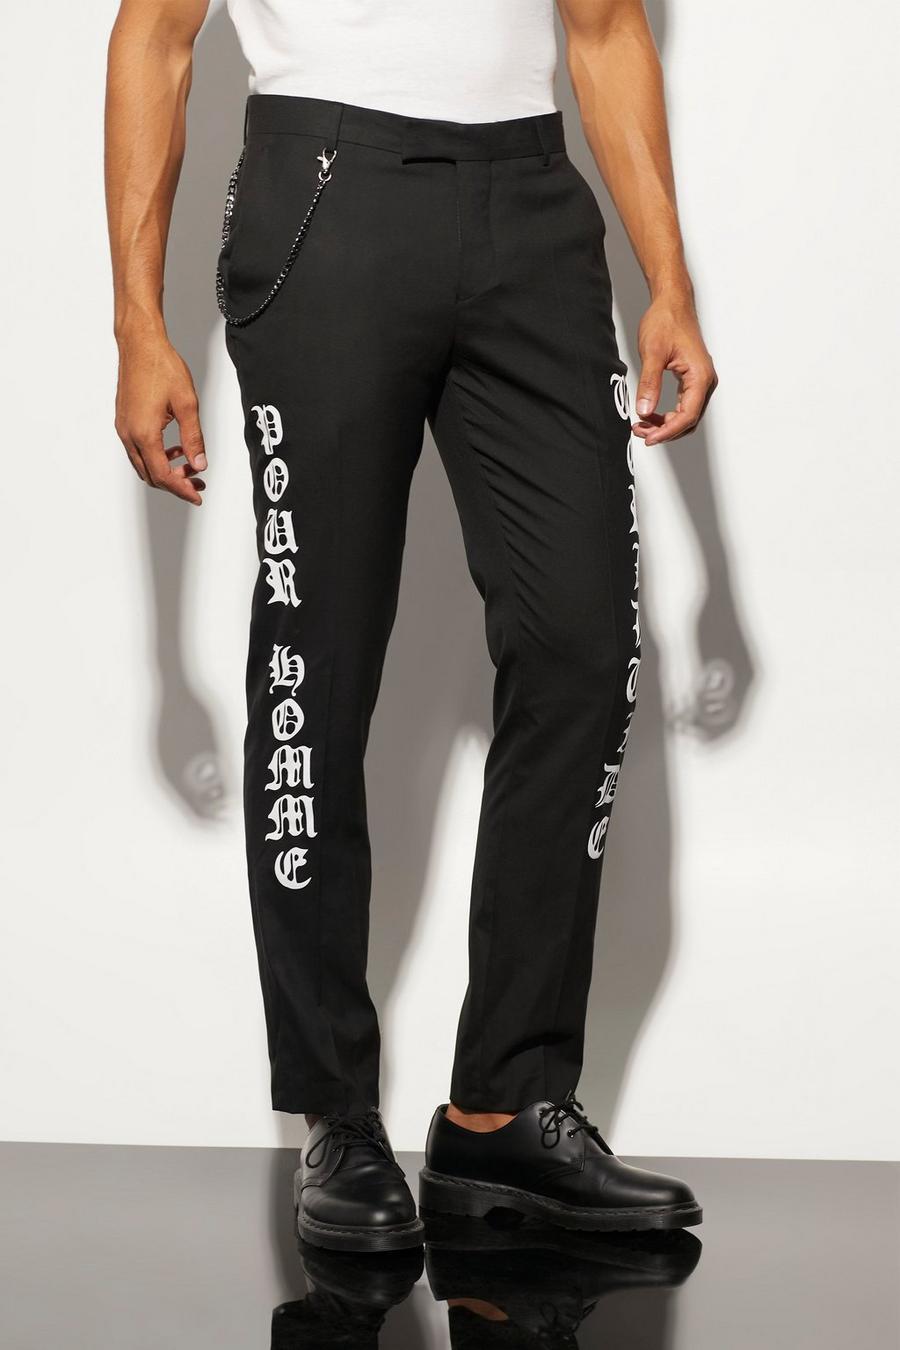 Pantalón entallado ajustado con estampado gráfico de eslogan, Black negro